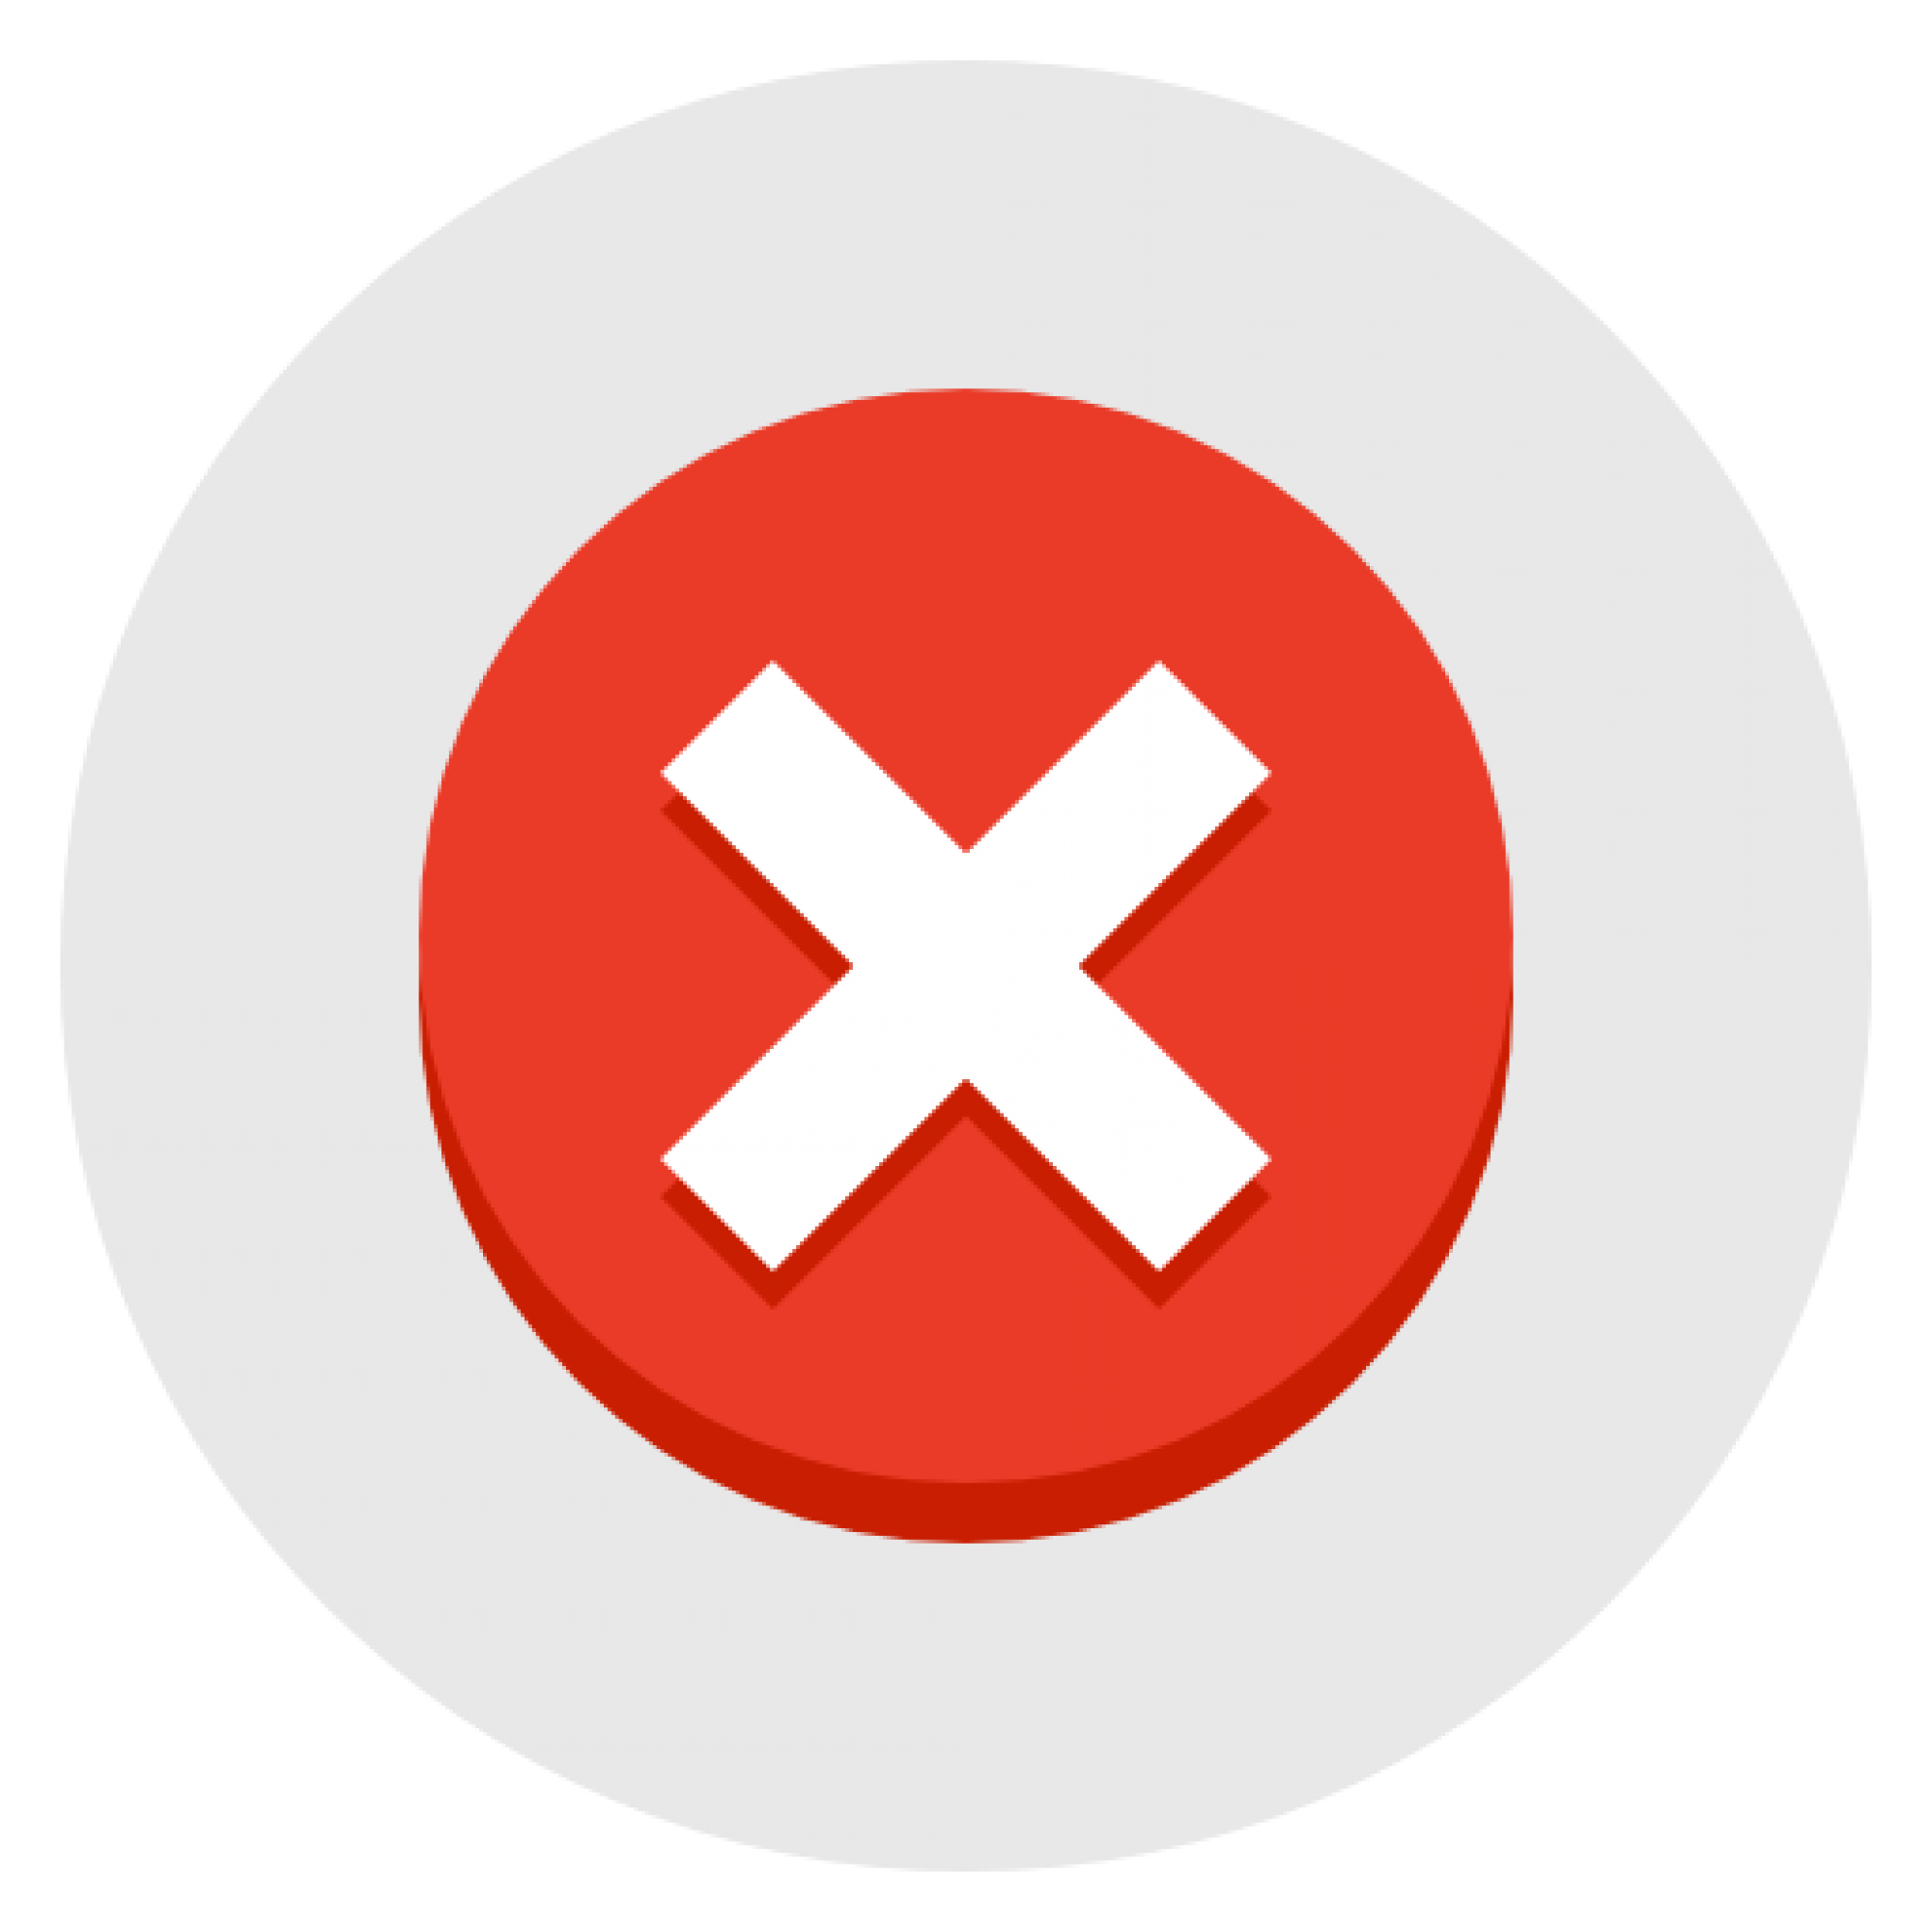 delete_unapprove_discard_remove_x_red_icon-icons.com_55984